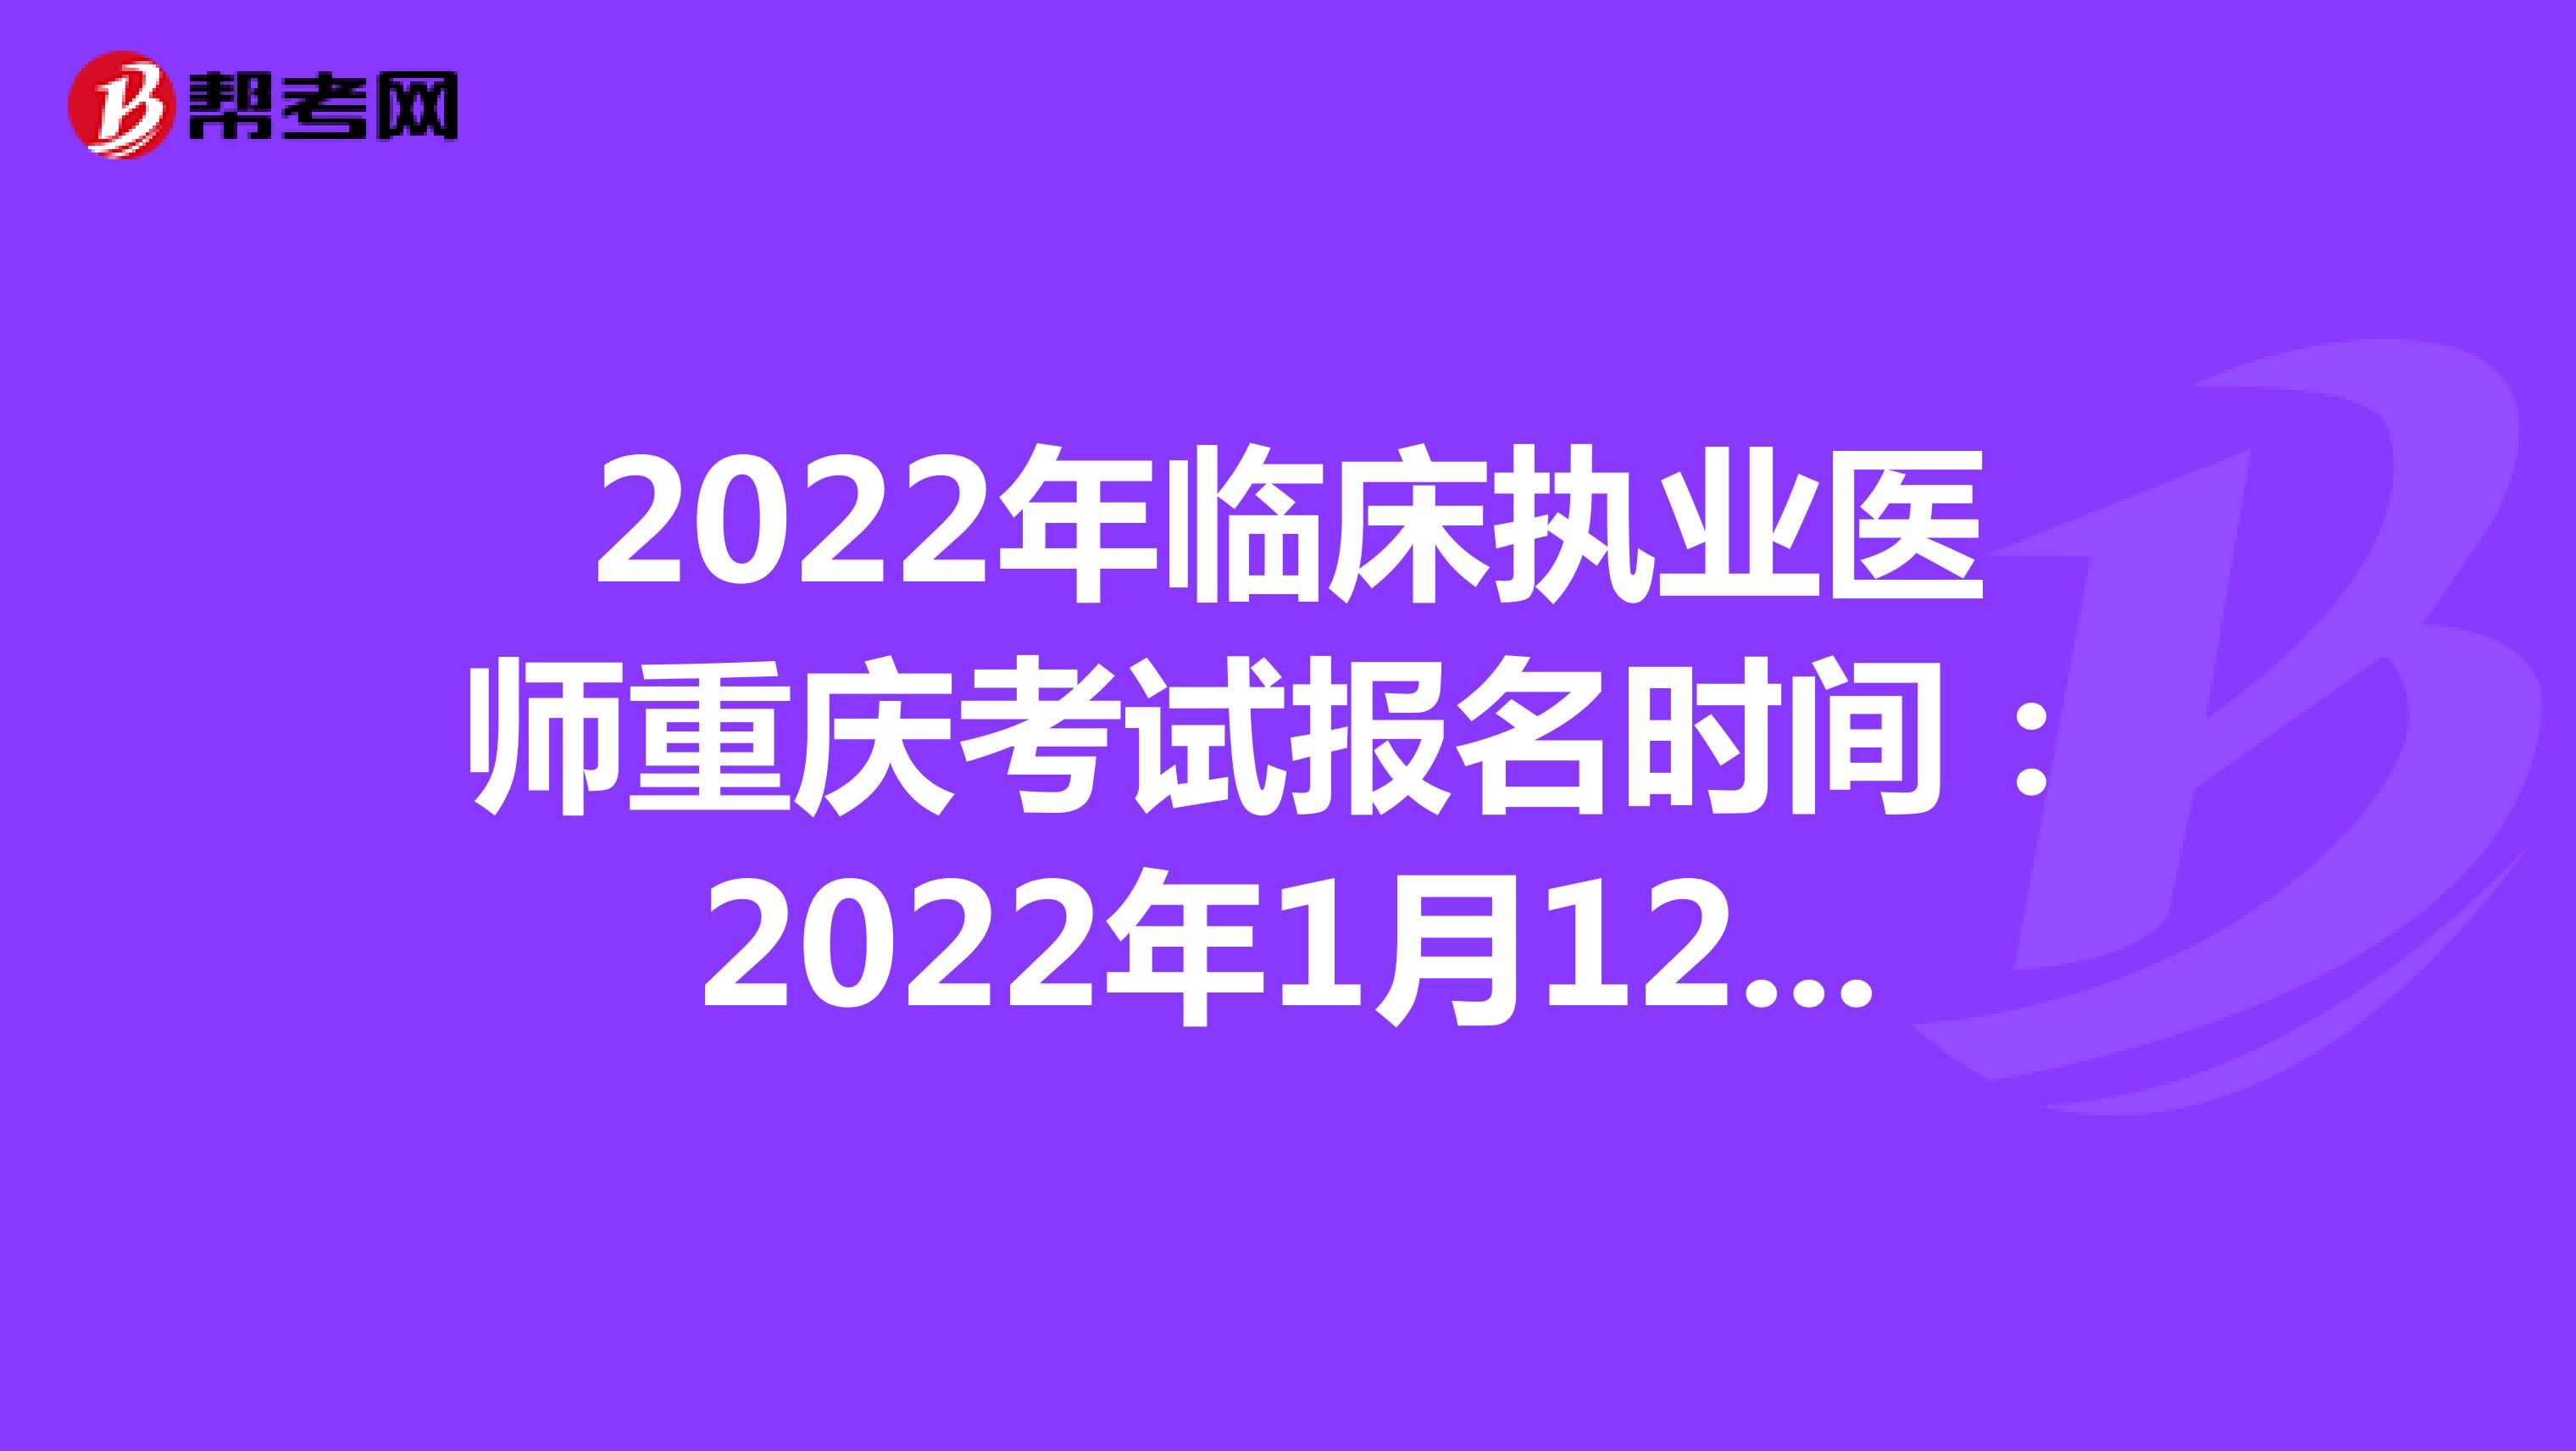 2022年临床执业医师重庆考试报名时间：2022年1月12日至1月25日